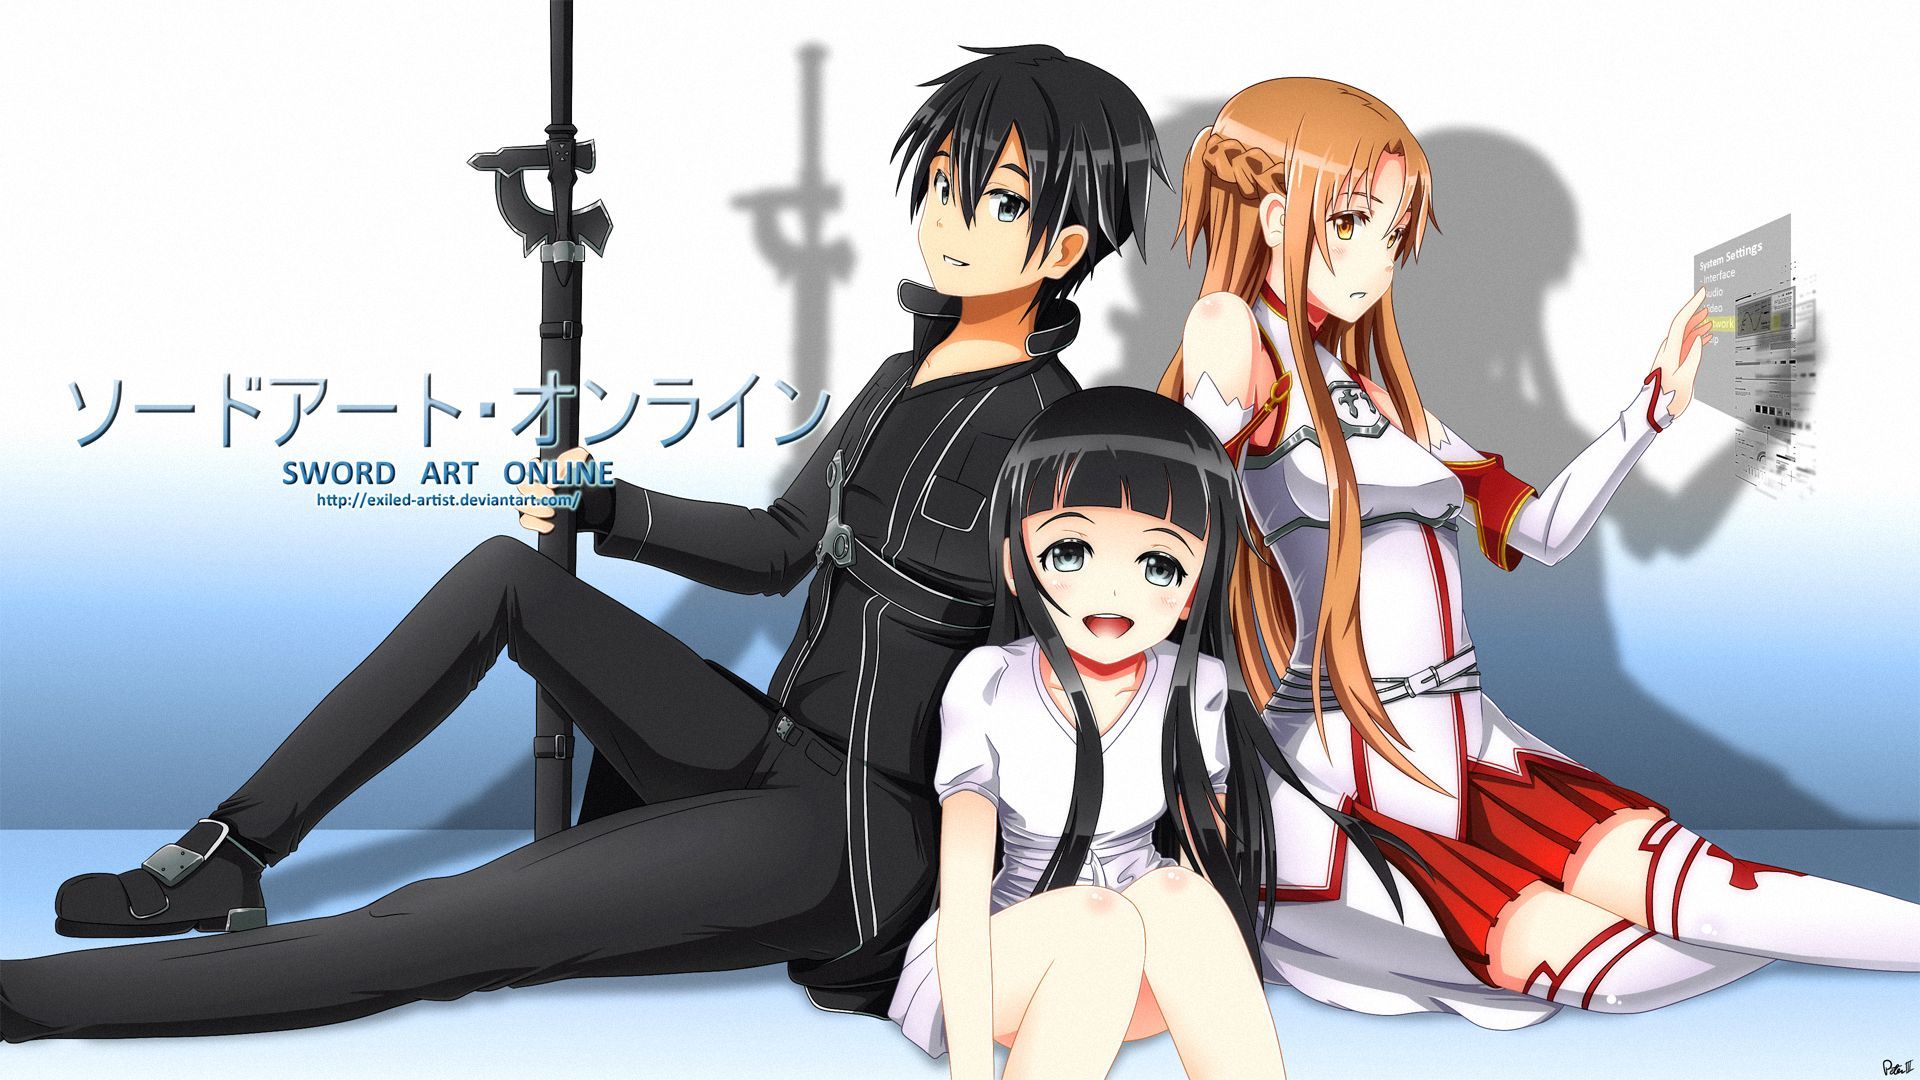 Kirito Asuna and Yui Sword Art Online HD Wallpaper. Desktop